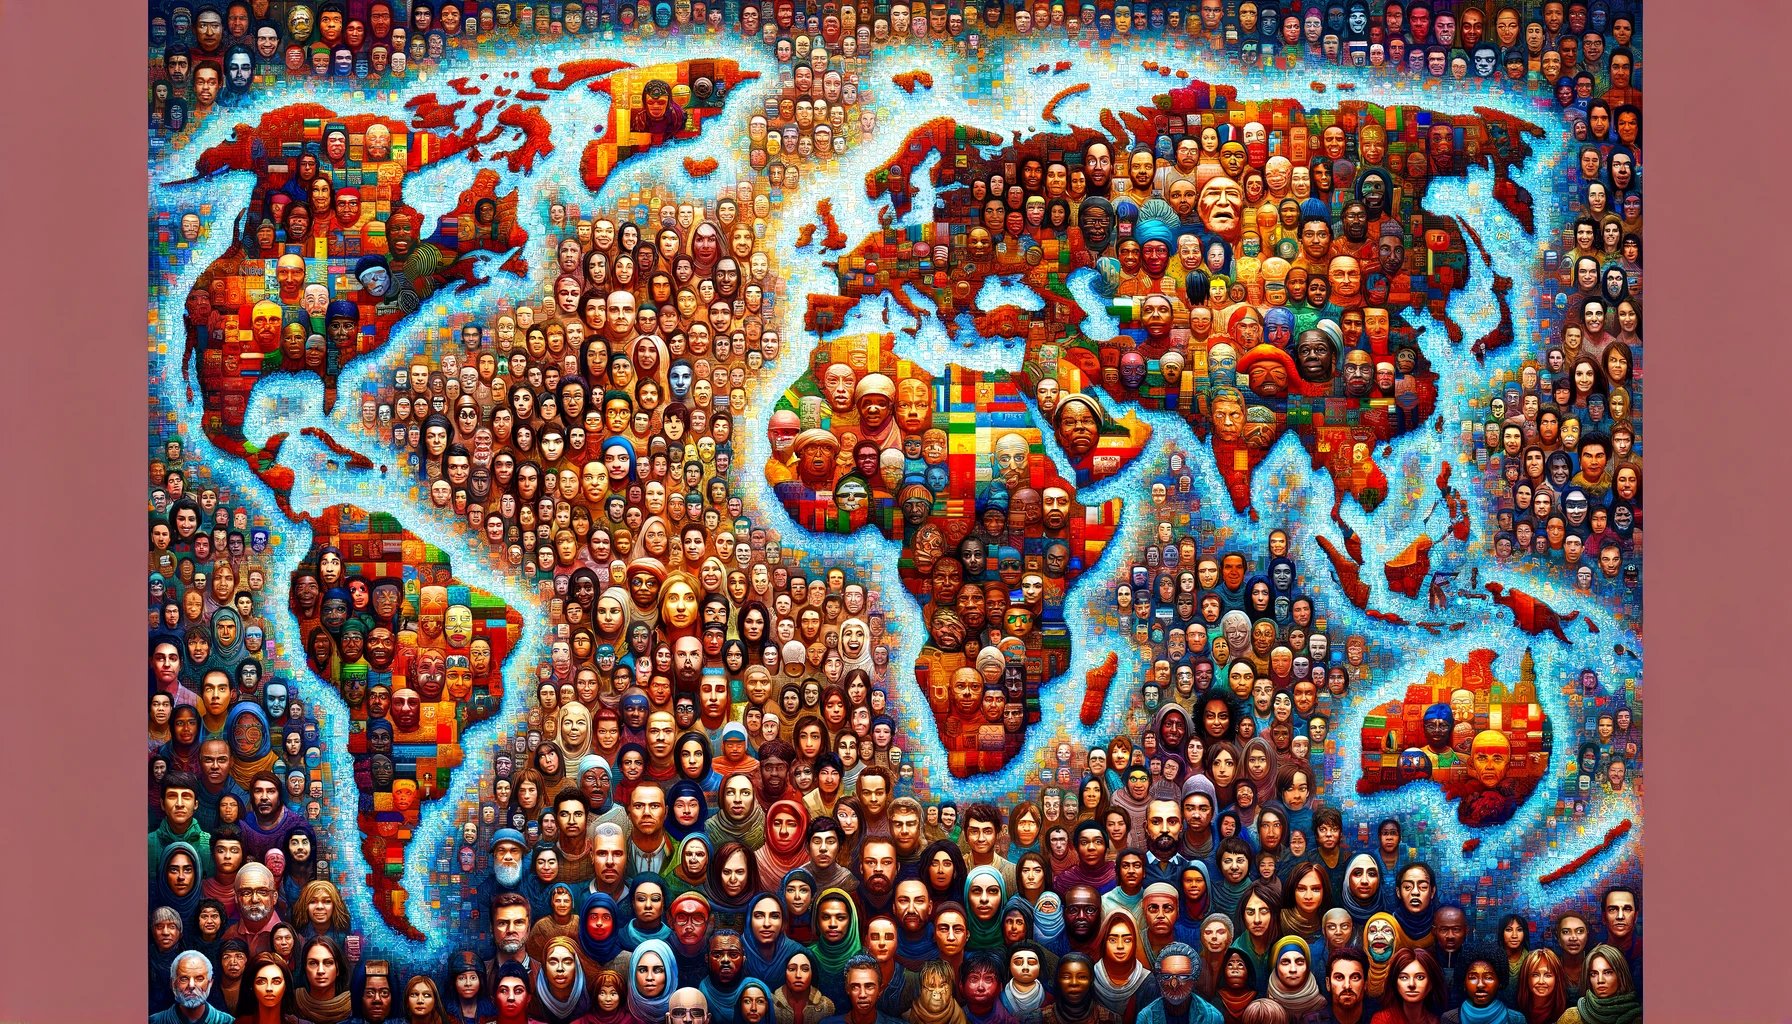 diversidad humana en la migración